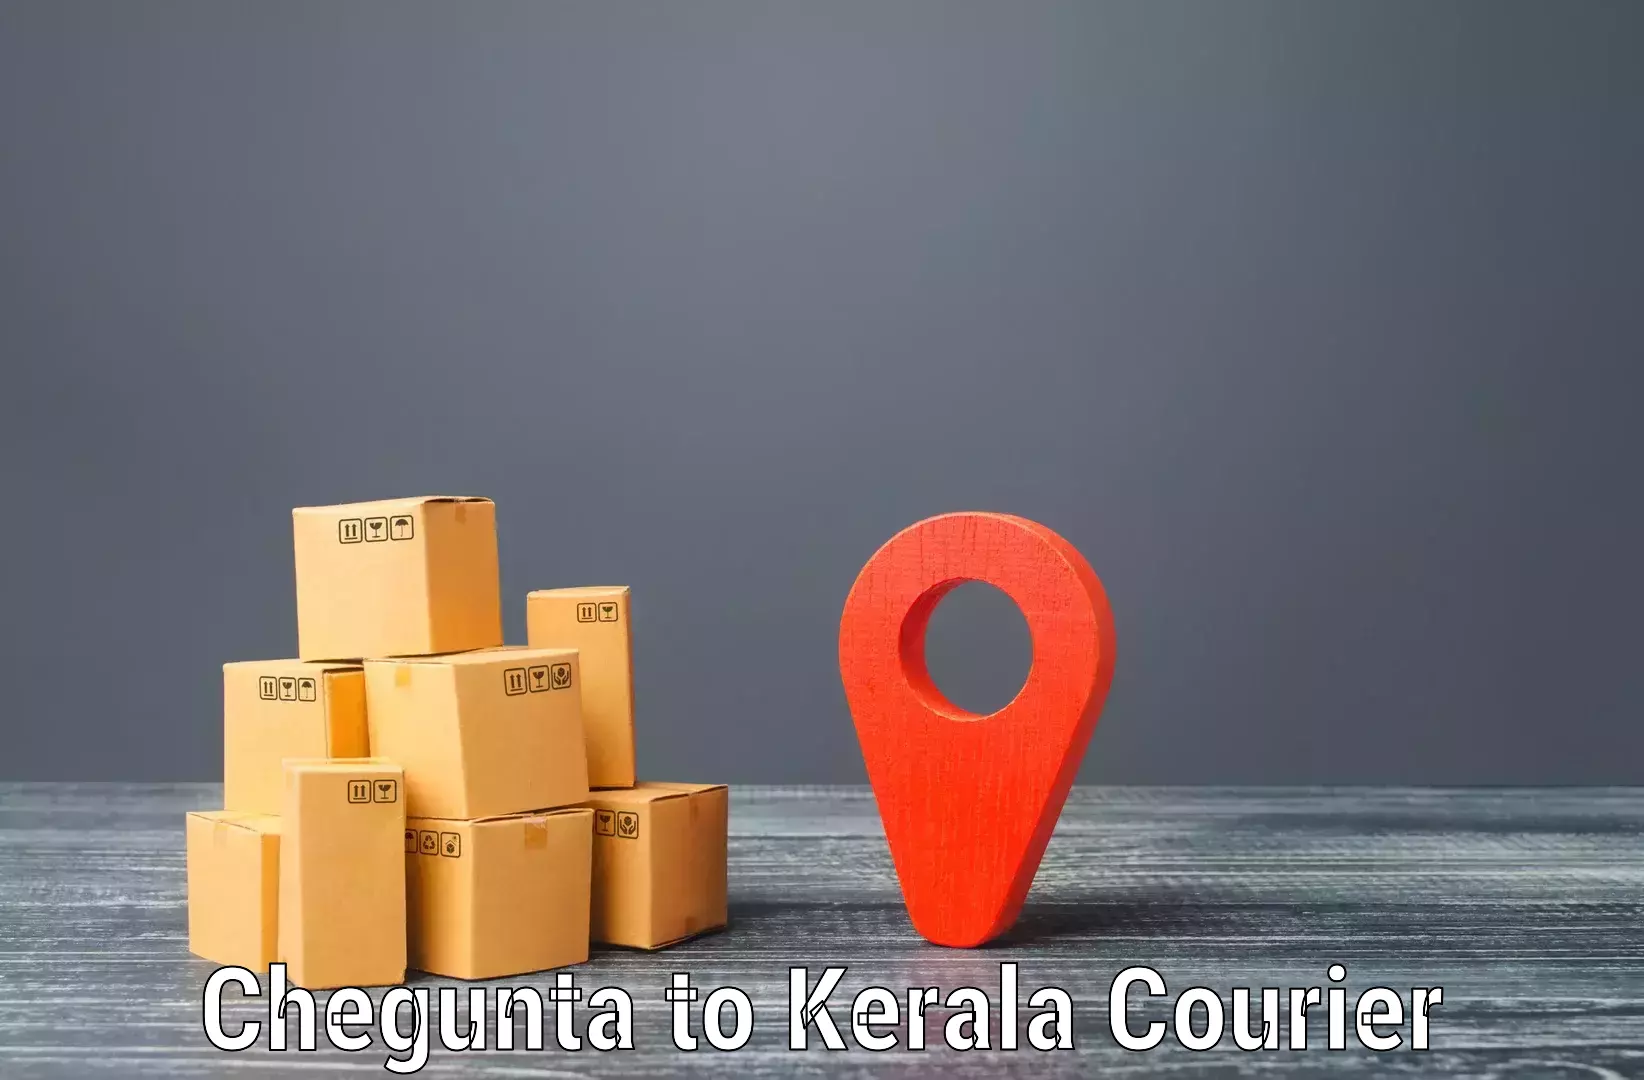 Tech-enabled shipping Chegunta to Thodupuzha